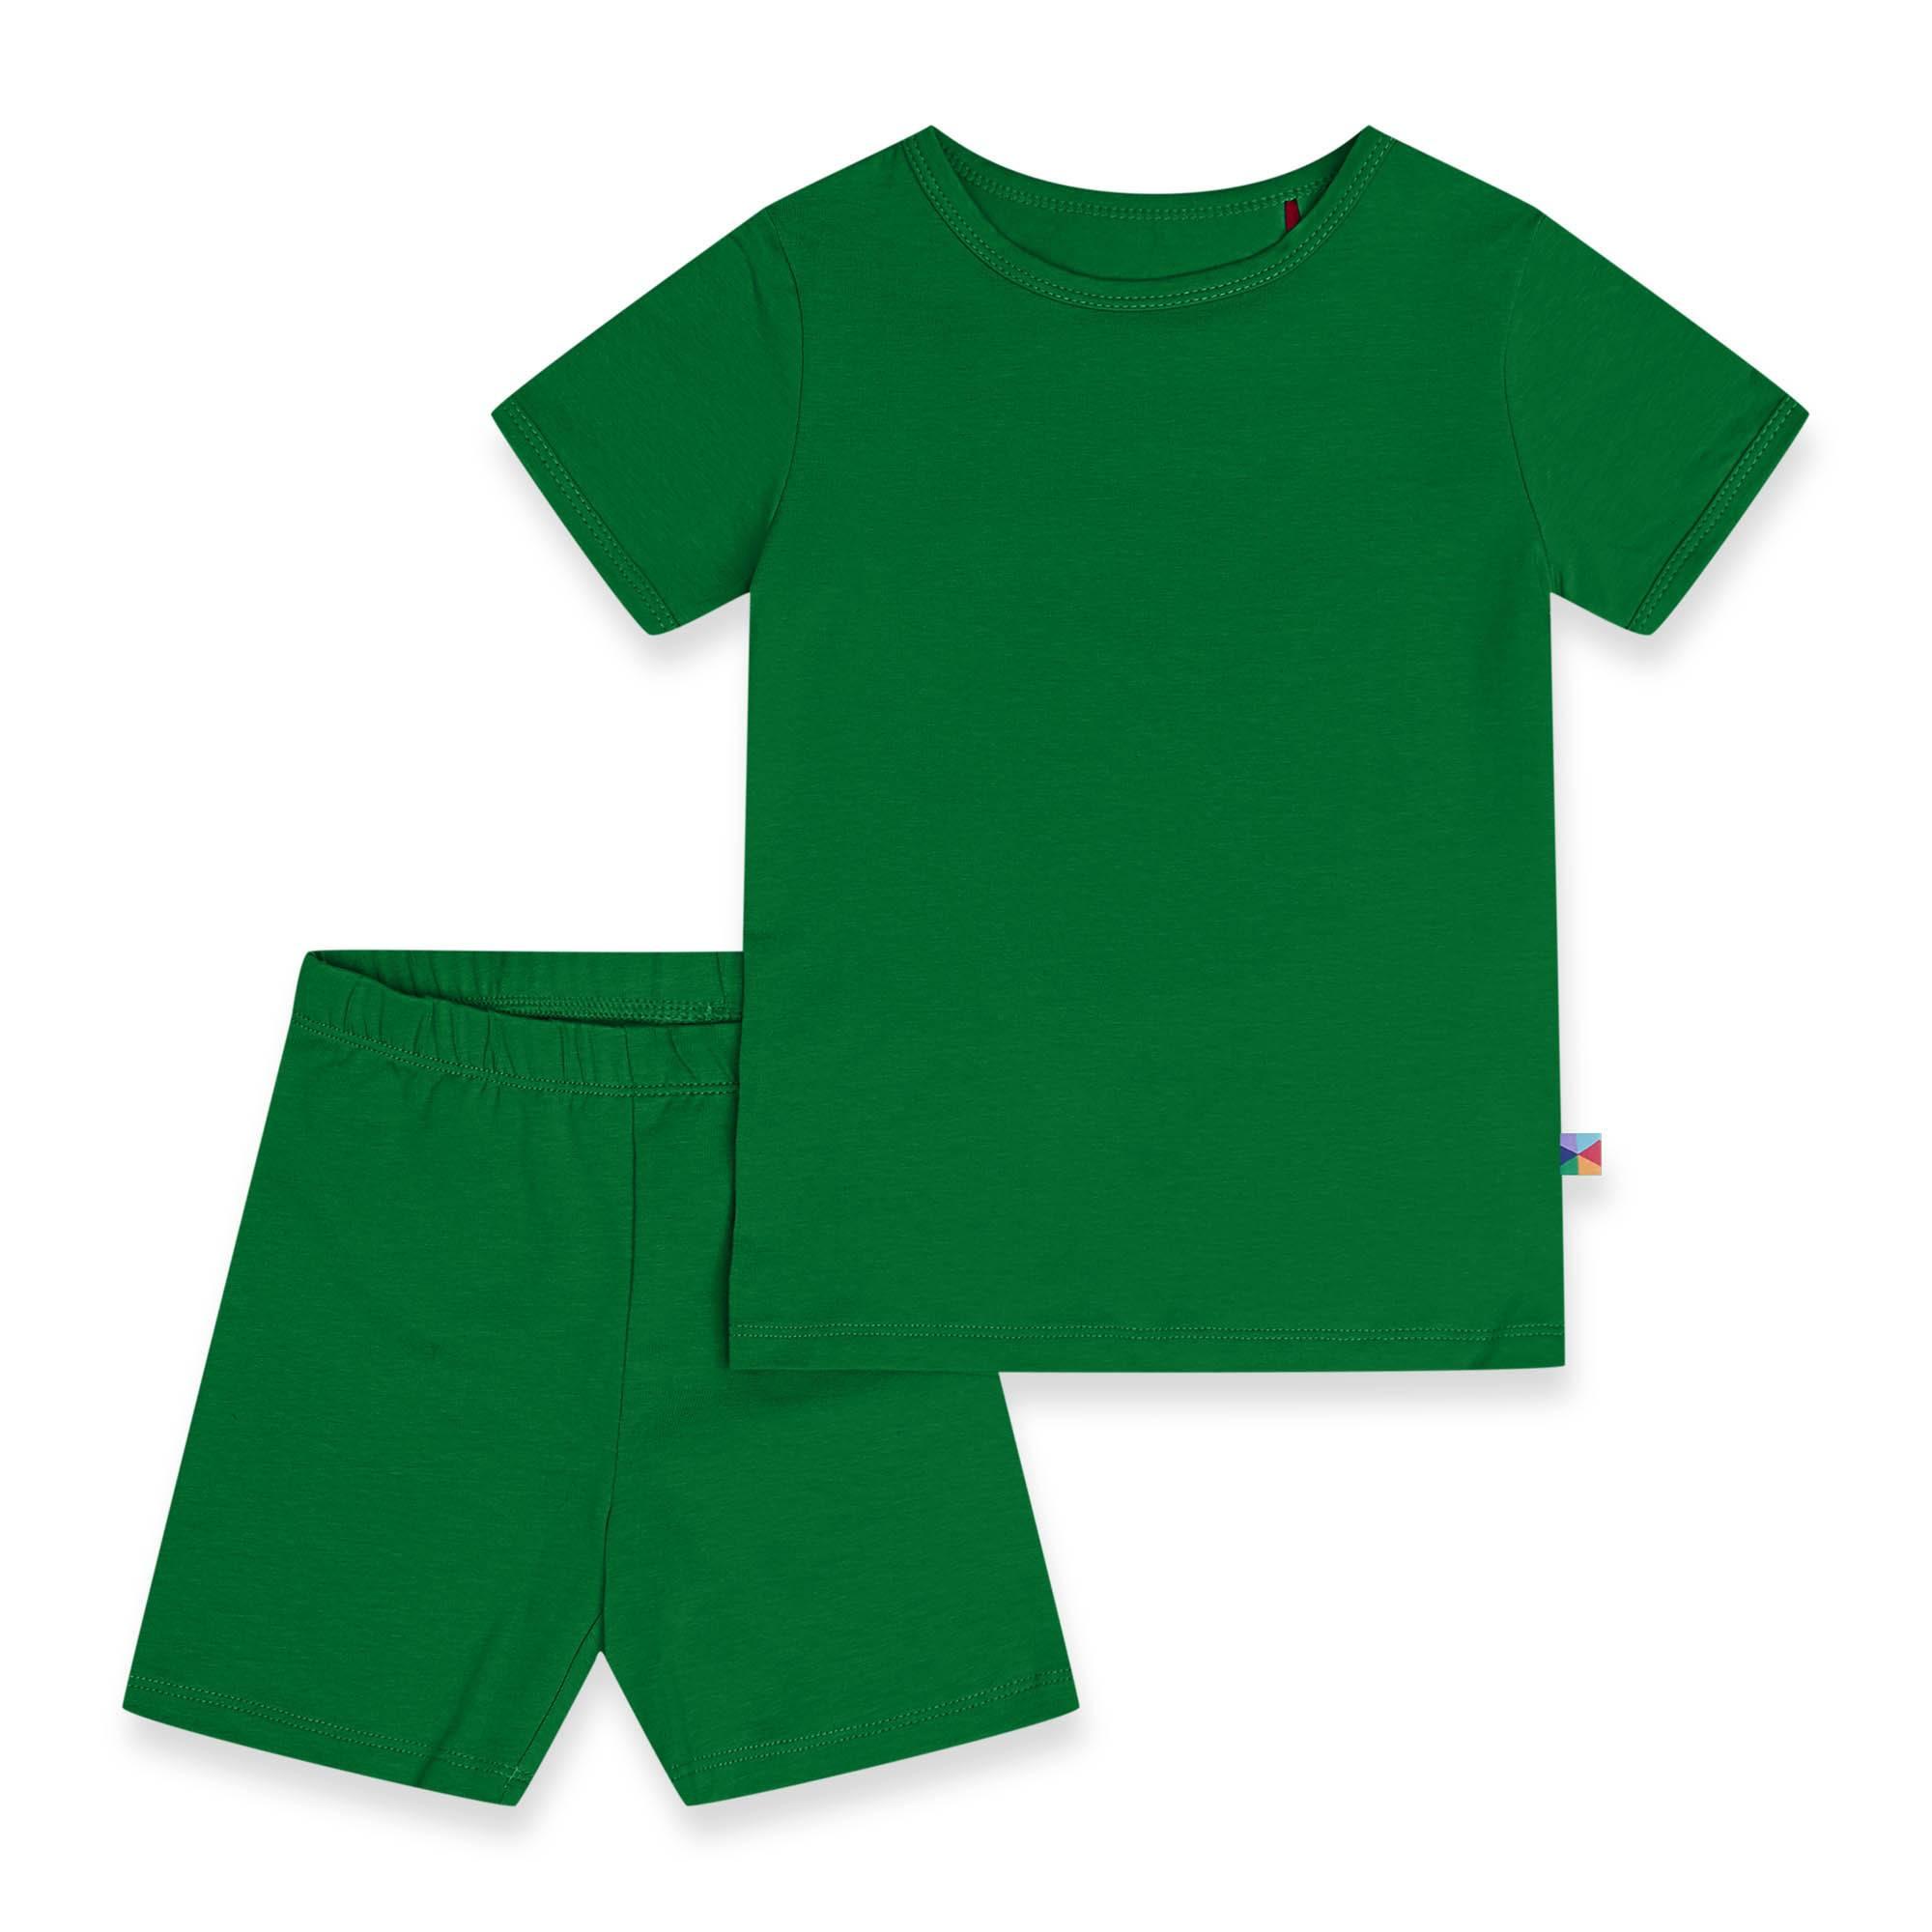 Zielona piżamka na krótki rękaw Junior